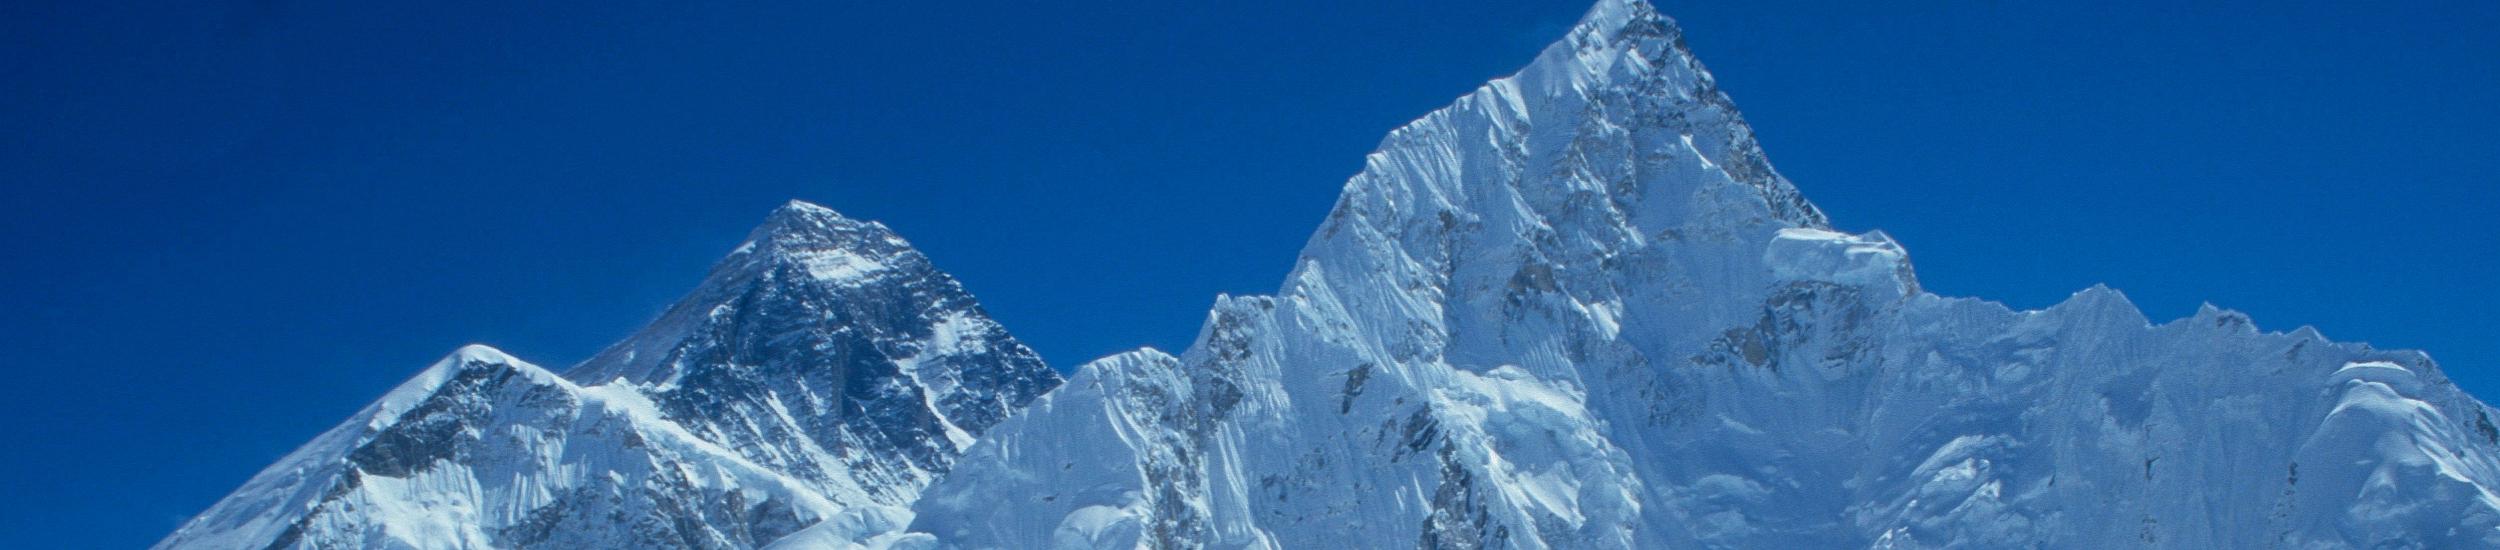 zz_W stronę bazy pod Everestem